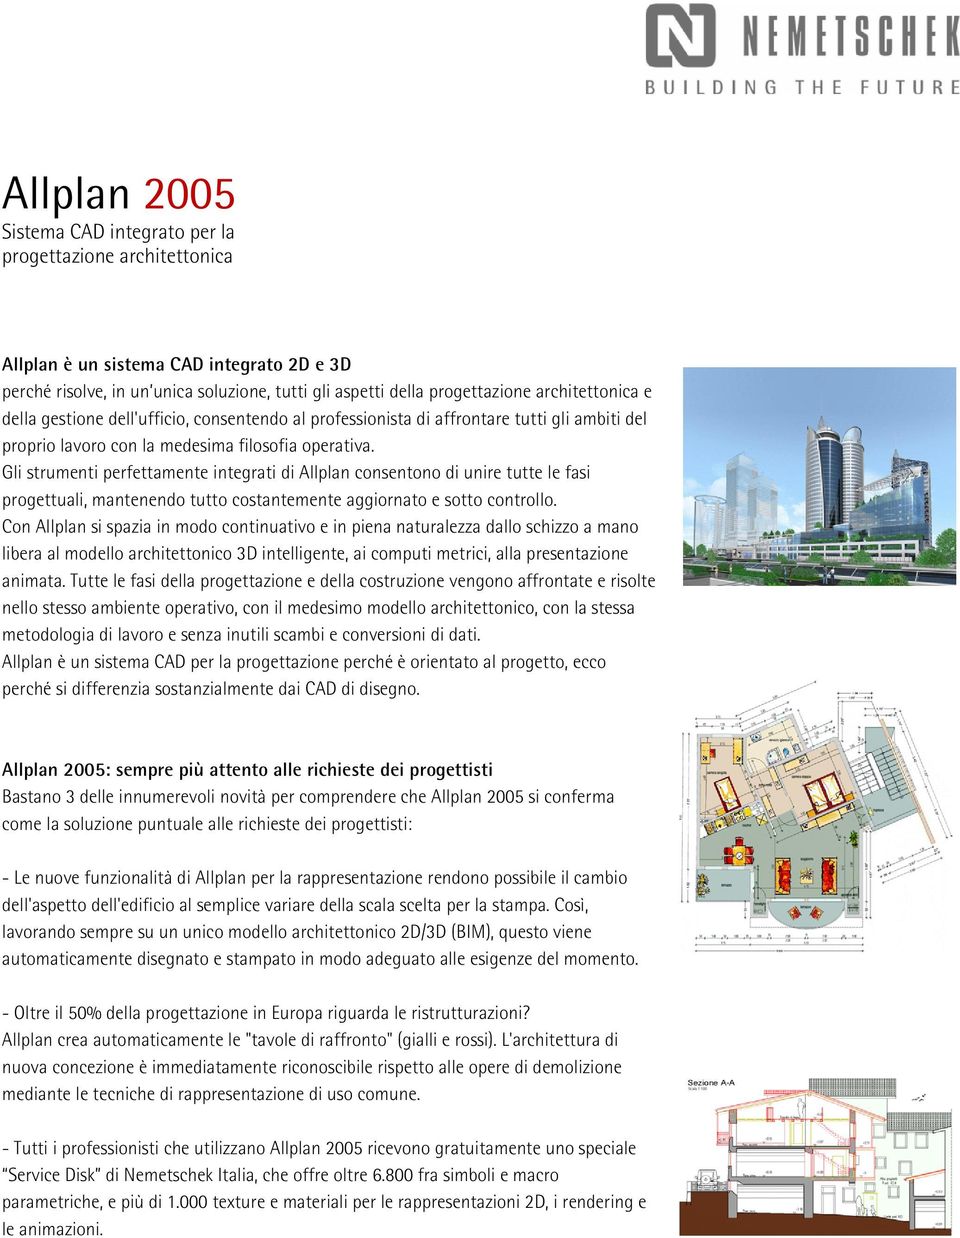 Gli strumenti perfettamente integrati di Allplan consentono di unire tutte le fasi progettuali, mantenendo tutto costantemente aggiornato e sotto controllo.